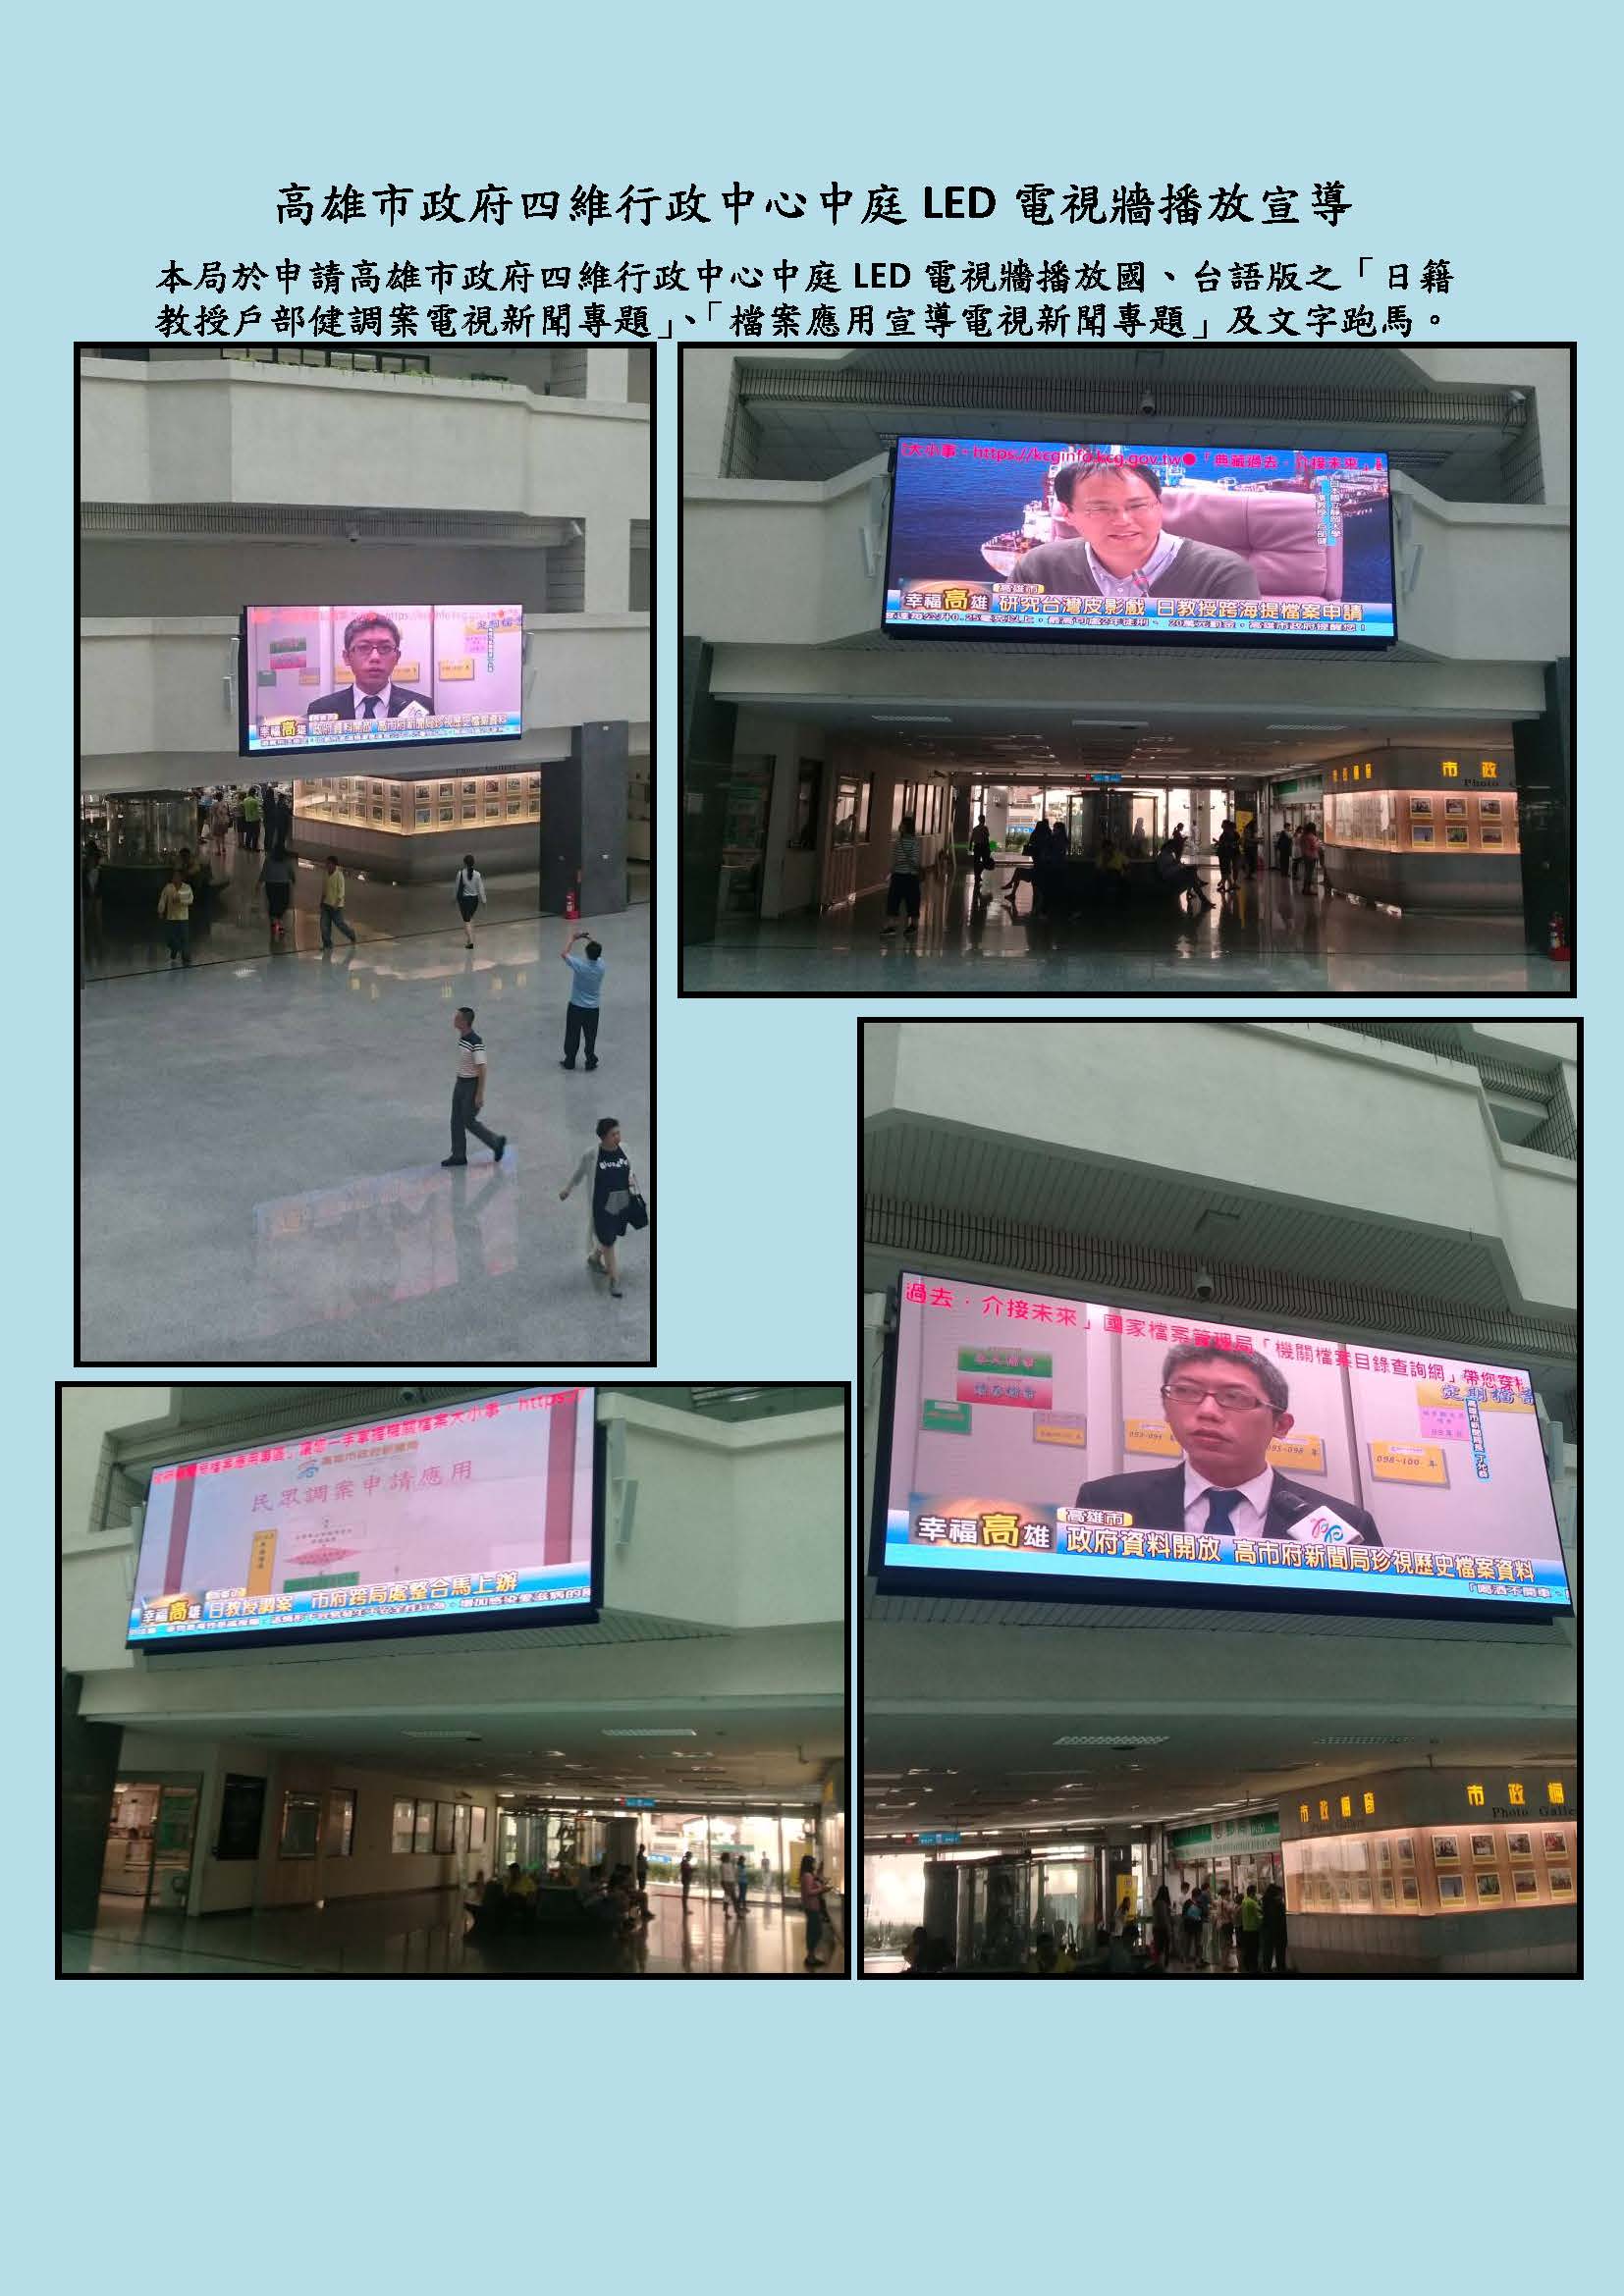 高雄市政府四維行政中心中庭LED電視牆播放